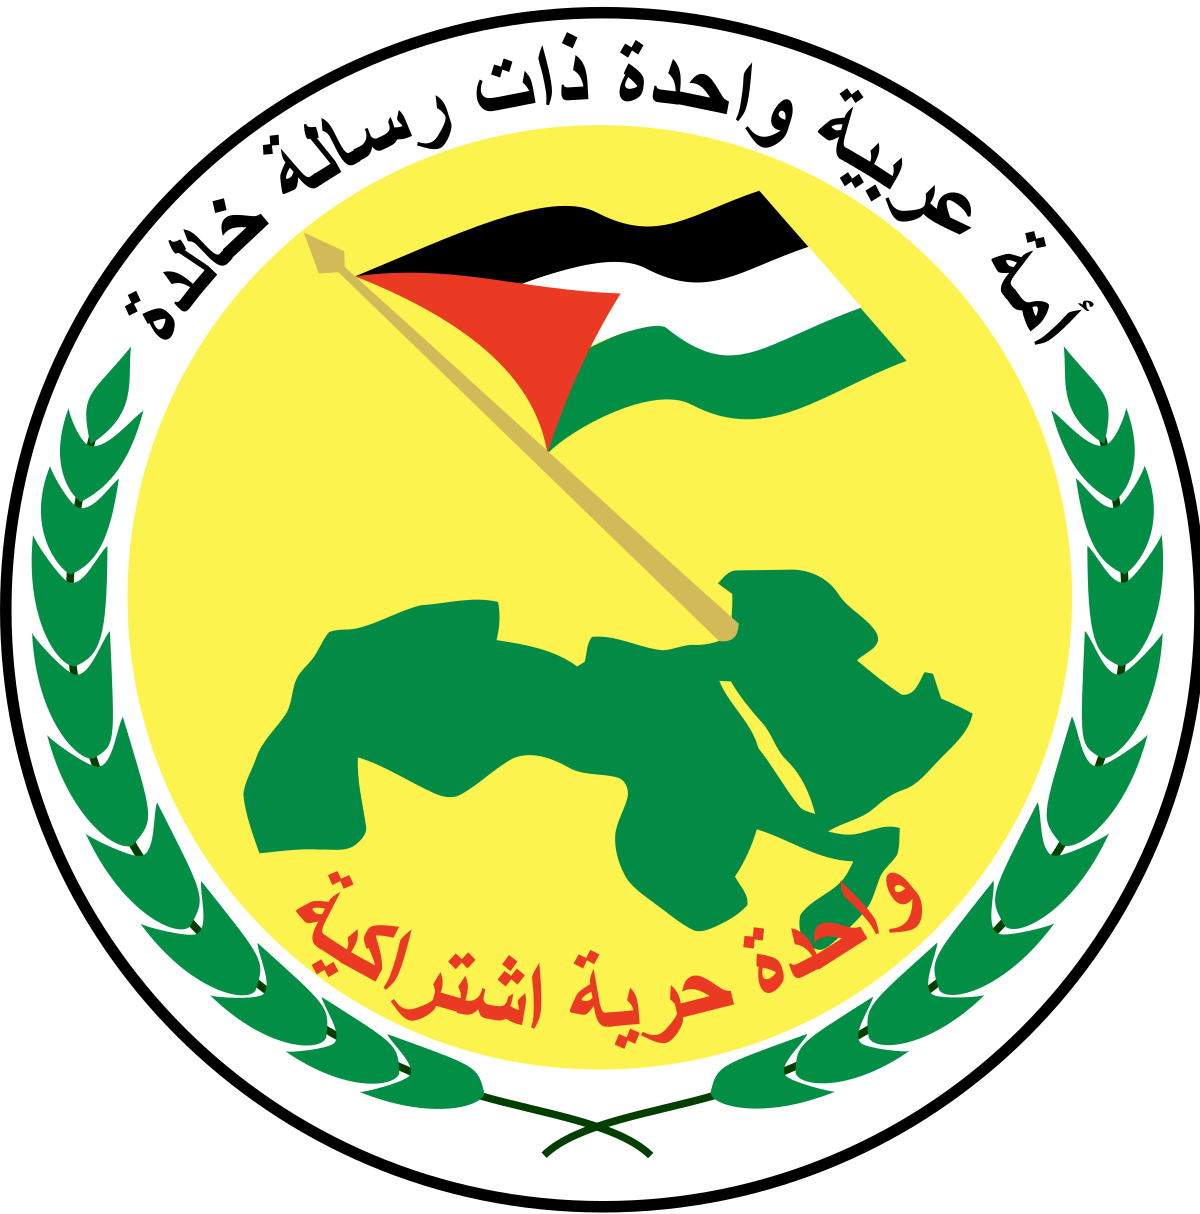 عاجل : بيان هام حزب البعث العربي الاشتراكي بالتزامن مع الذكرى الـ ( 73 ) لتأسيسه